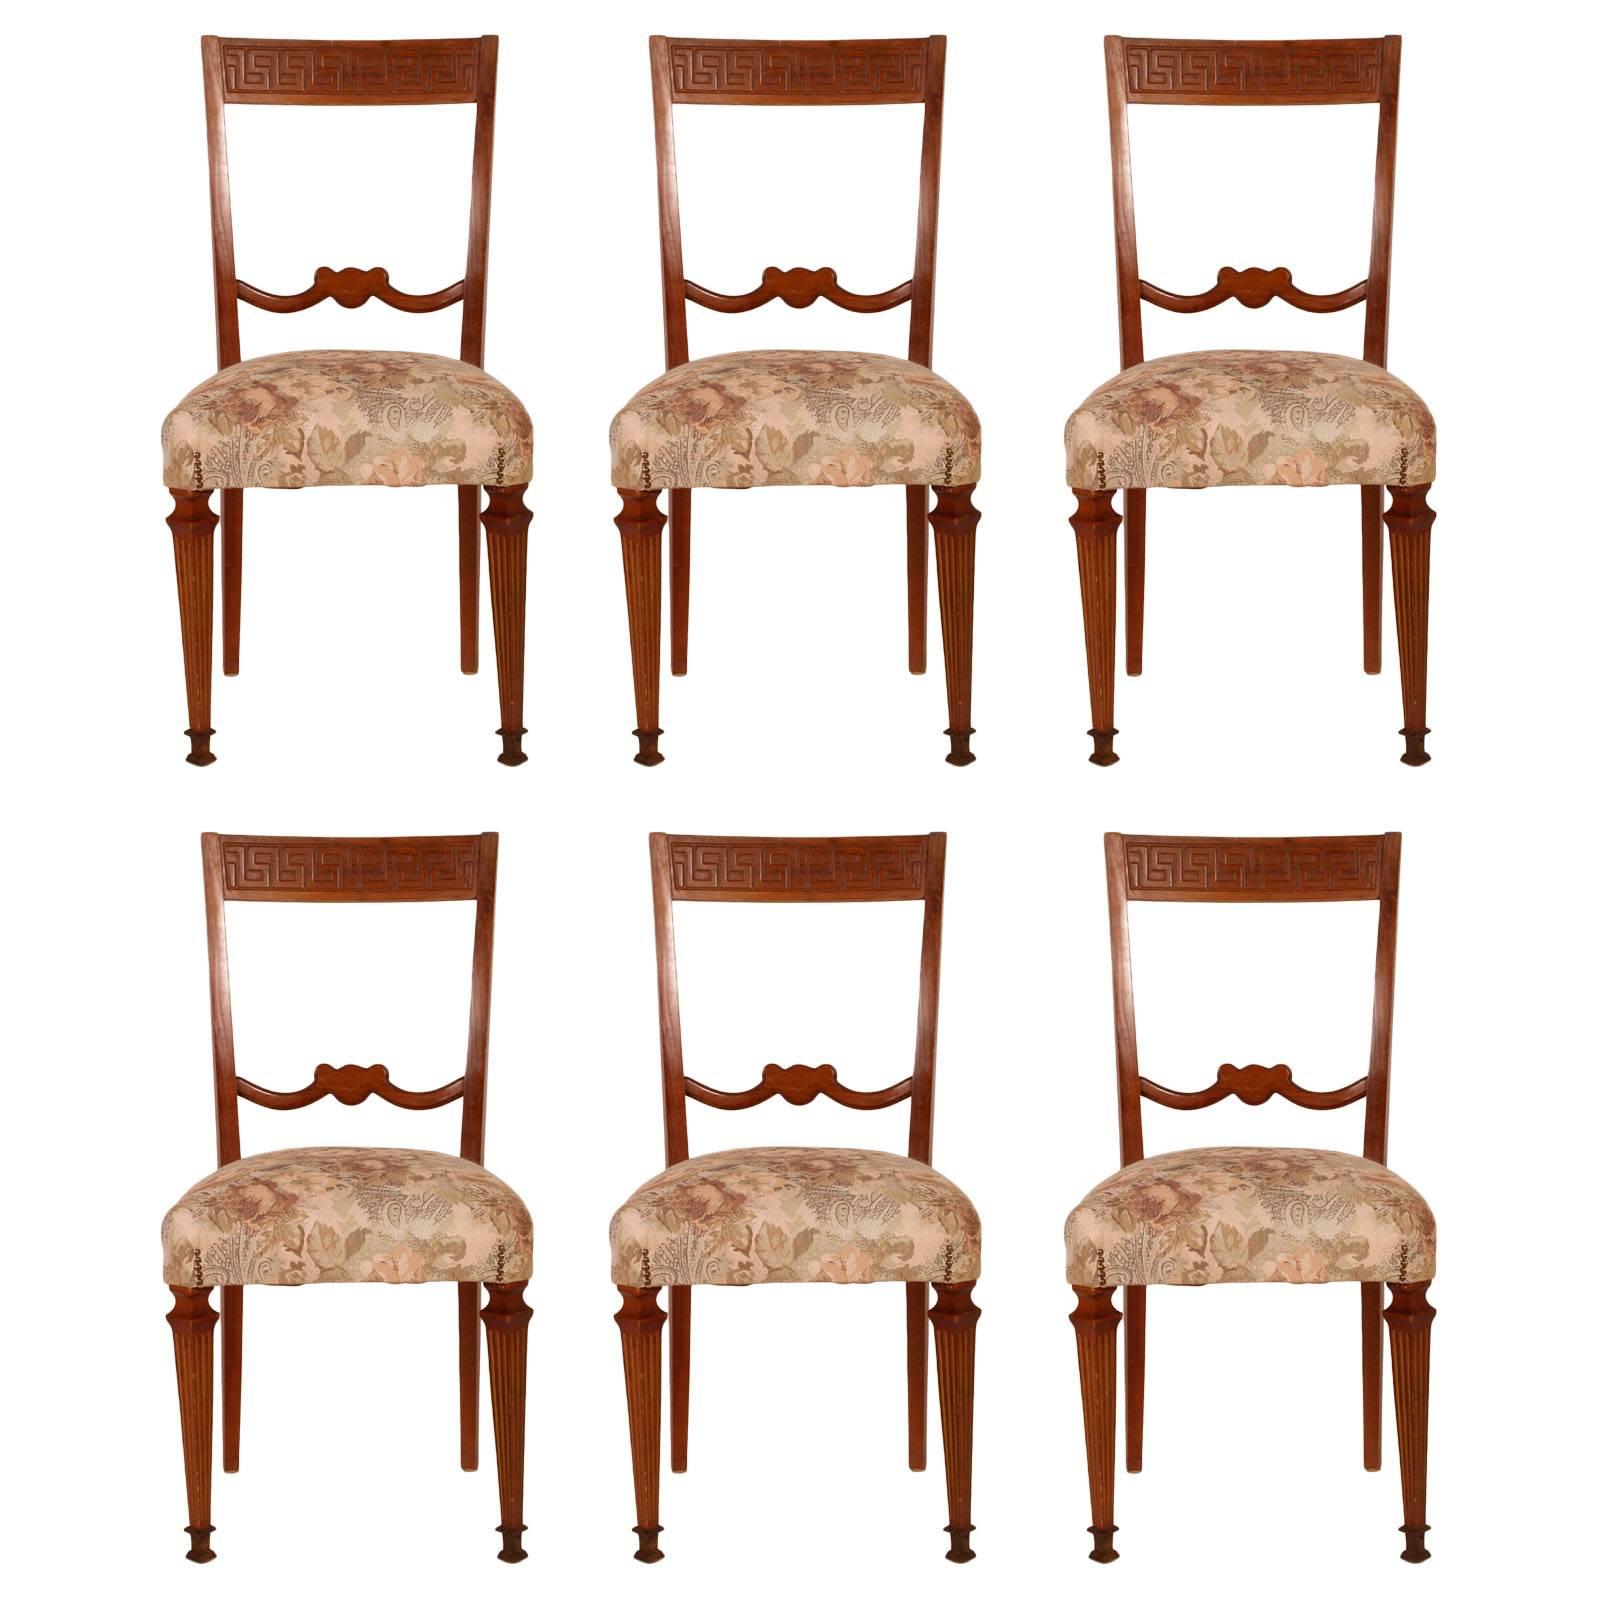 Seis sillas neoclásicas italianas de los años 40 atribuidas a Paolo Buffa en nogal rubio